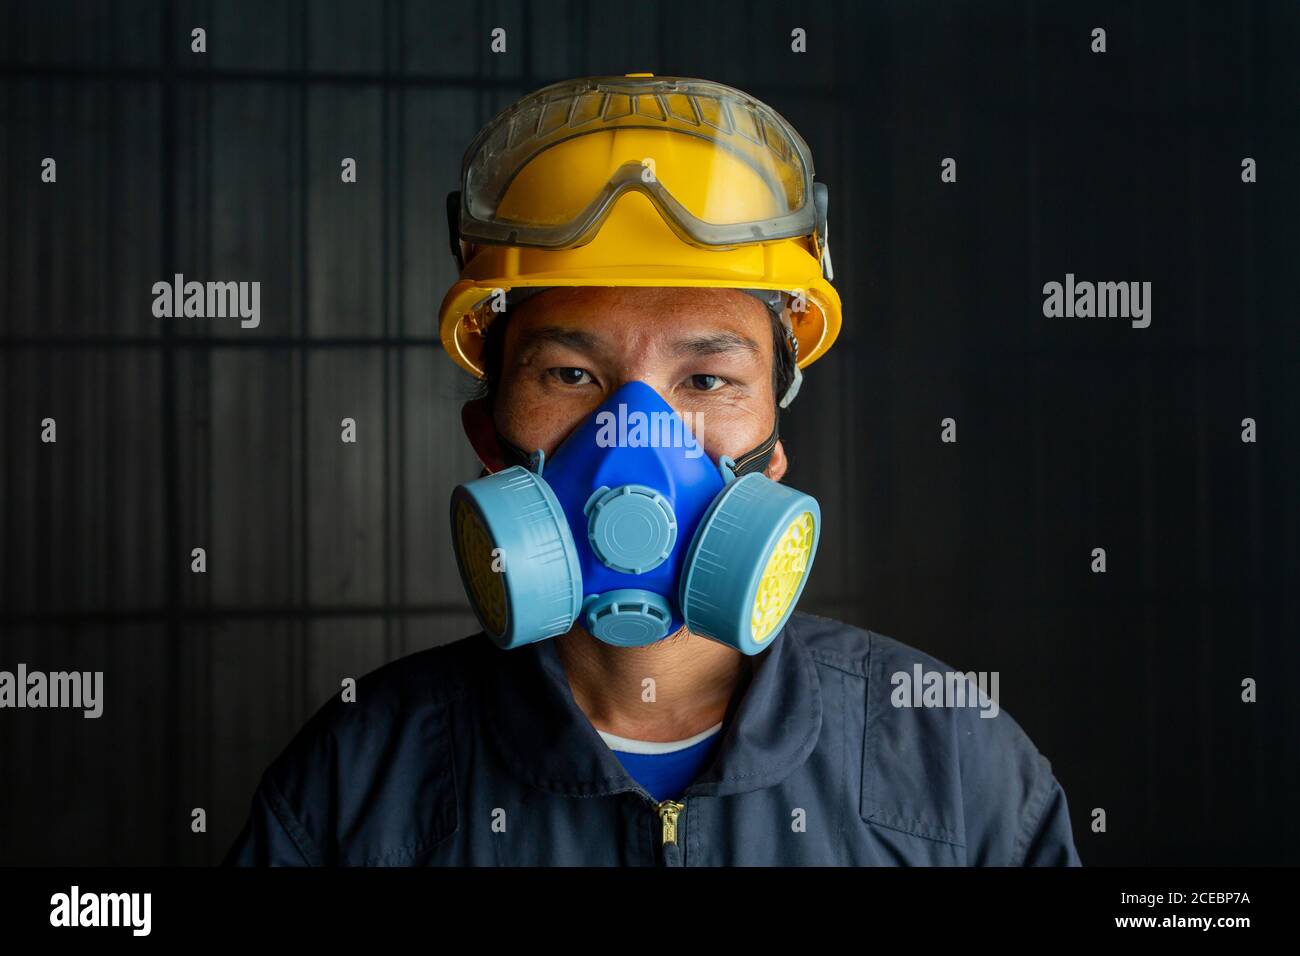 Les vêtements de travail asiatiques portent un respirateur dans une atmosphère toxique et fumée. L'image montre l'importance de la préparation à la protection et de la sécurité dans les usines industrielles Banque D'Images